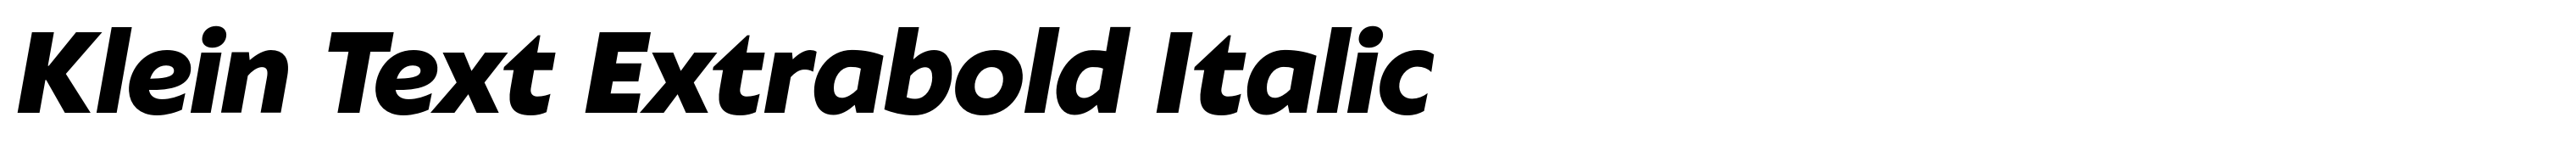 Klein Text Extrabold Italic